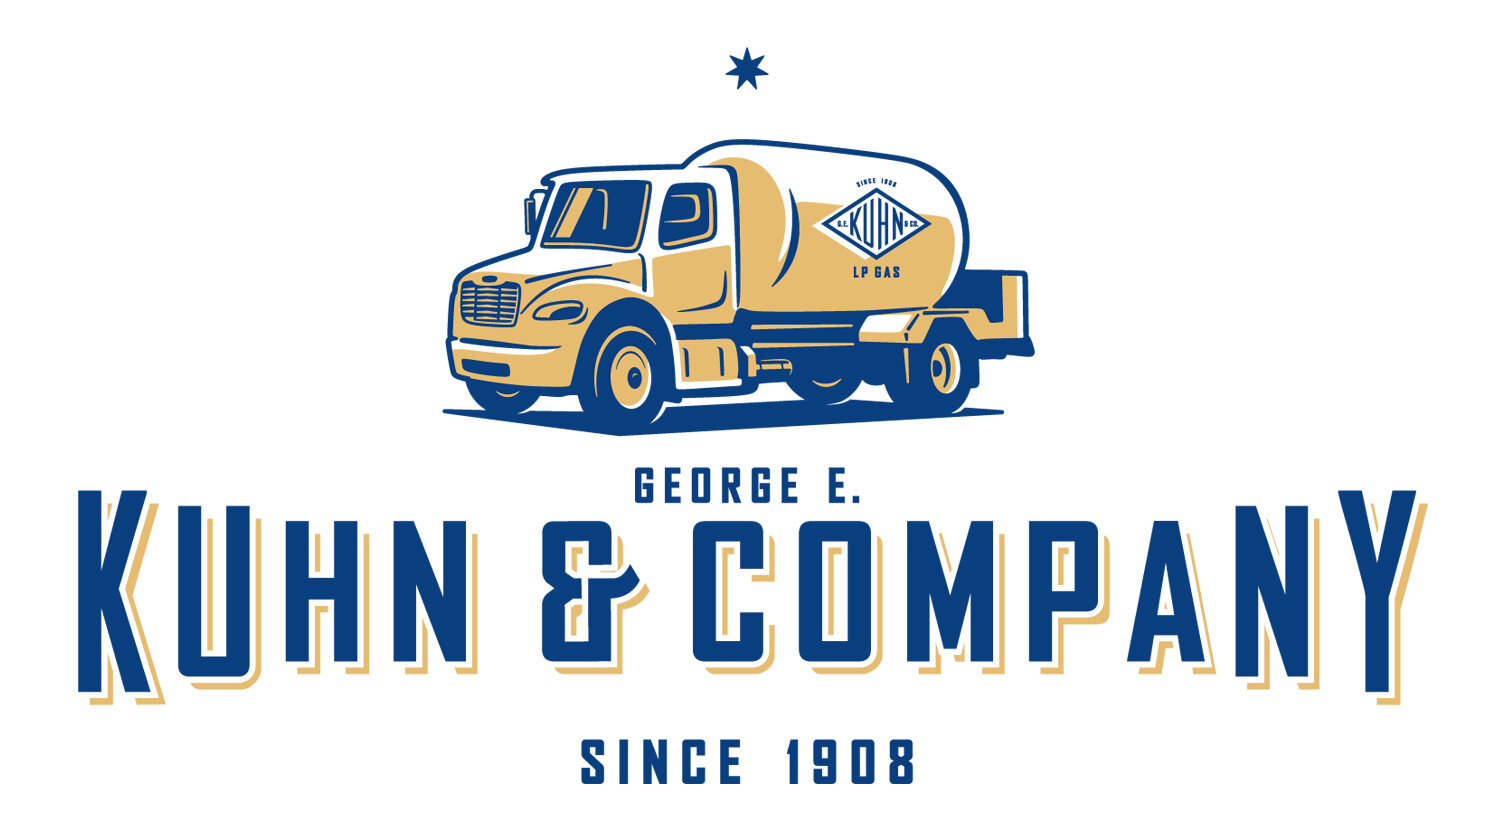 George E. Kuhn & Company - Since 1908